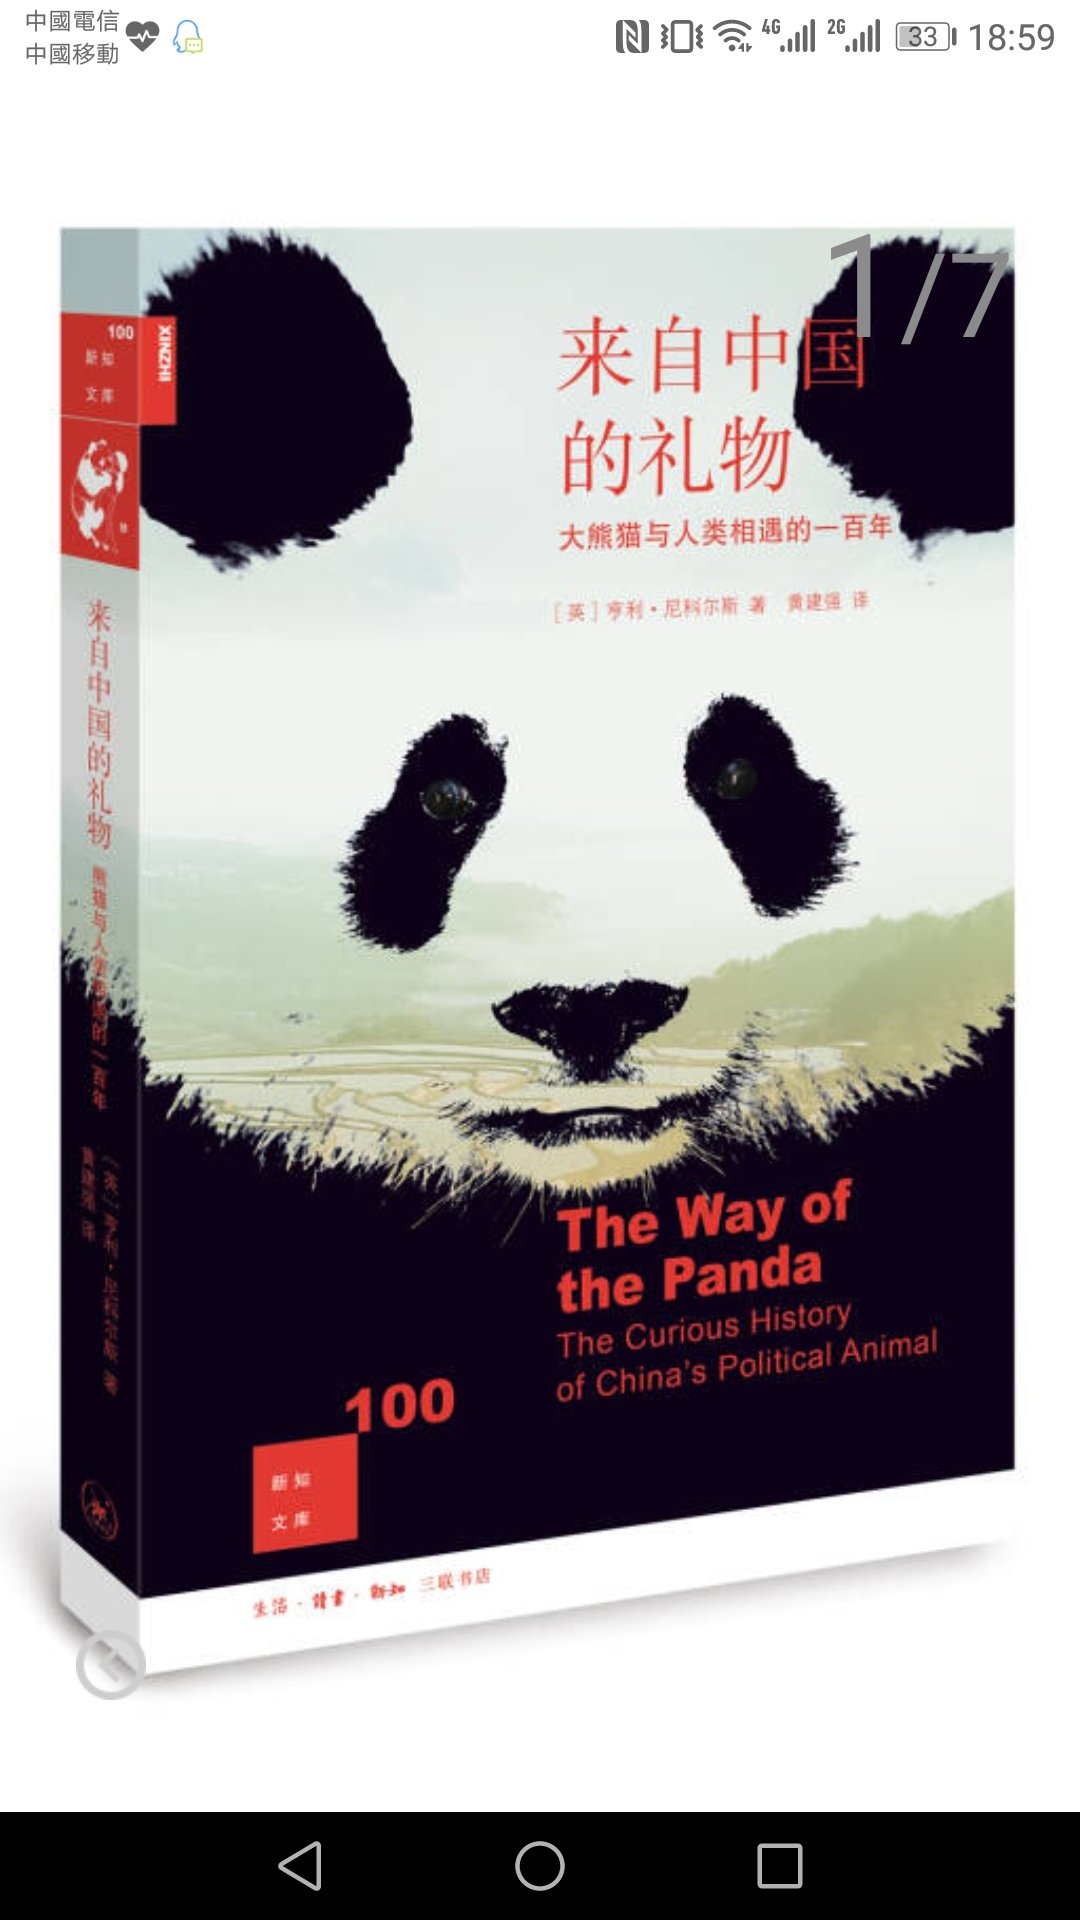 熊猫的故事，跟译文纪实的书配合着看！